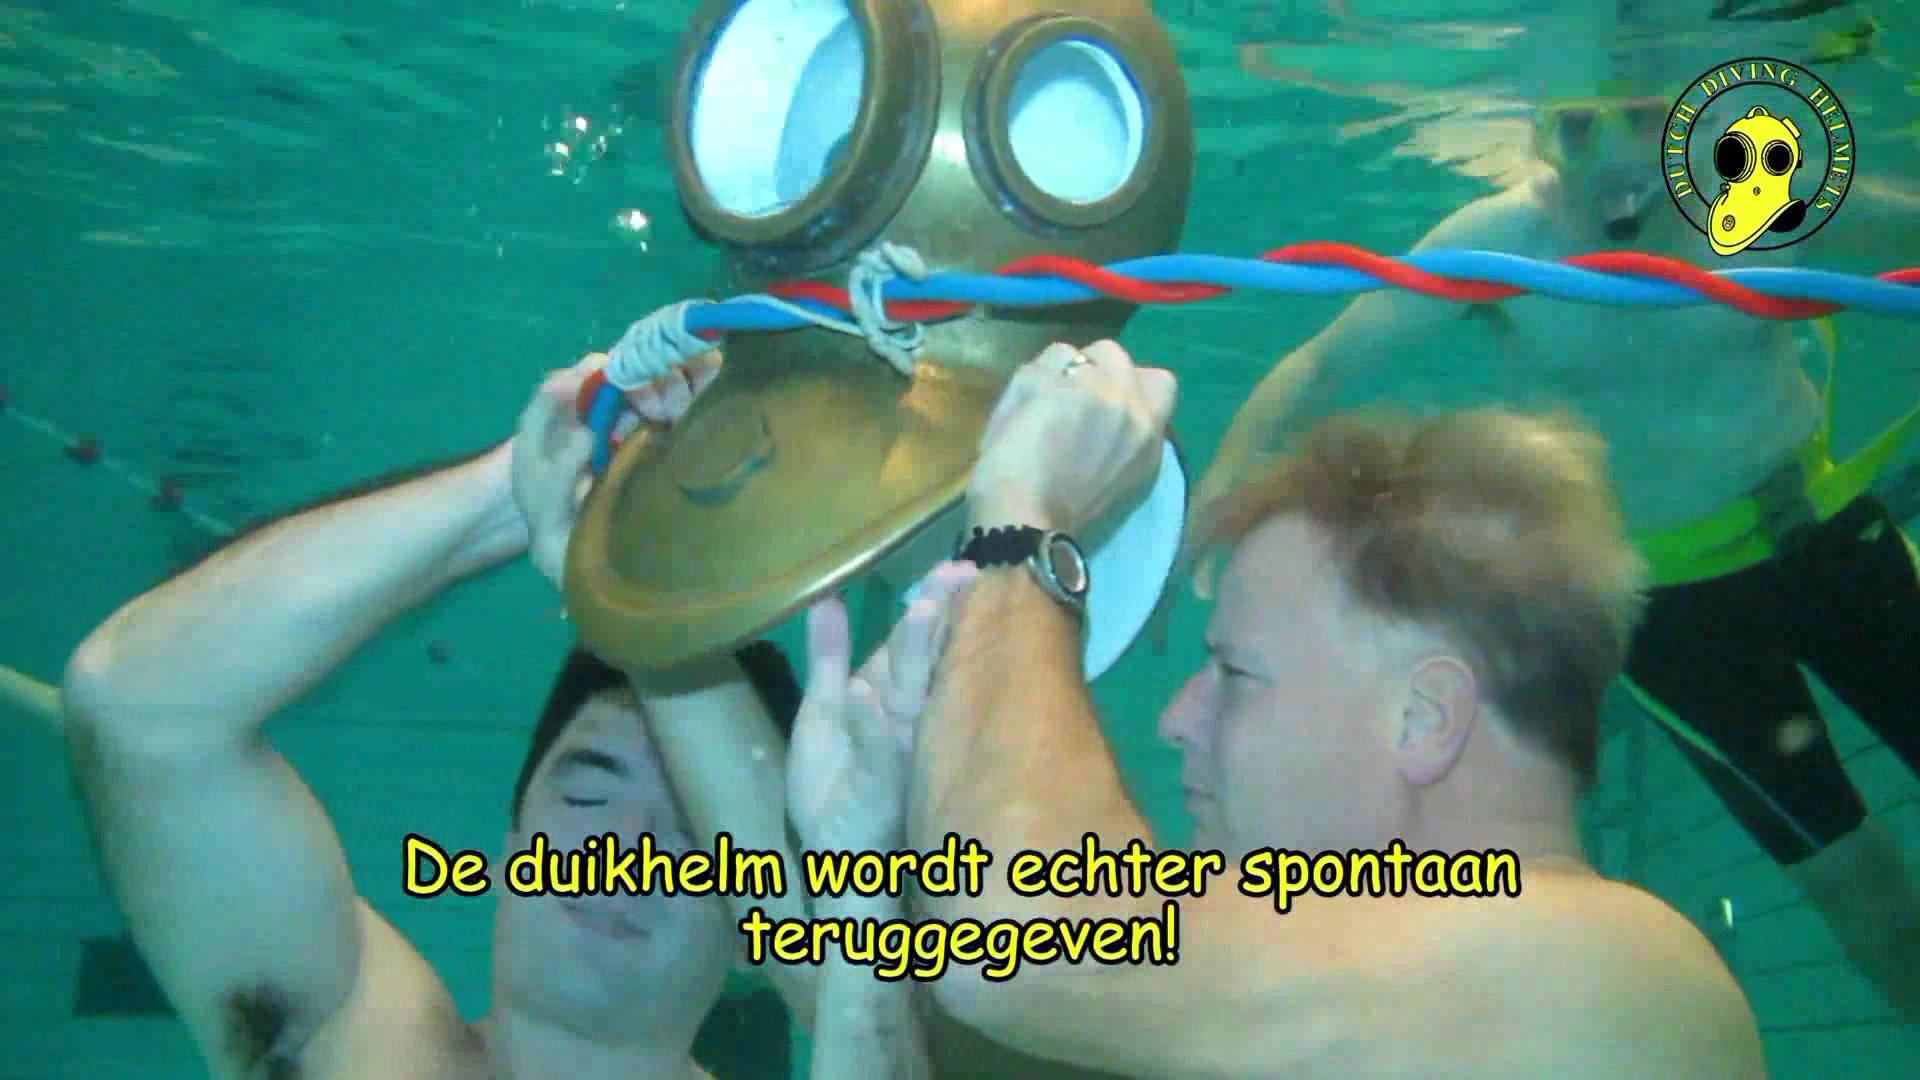 Dutch divers exchanging helmet underwater